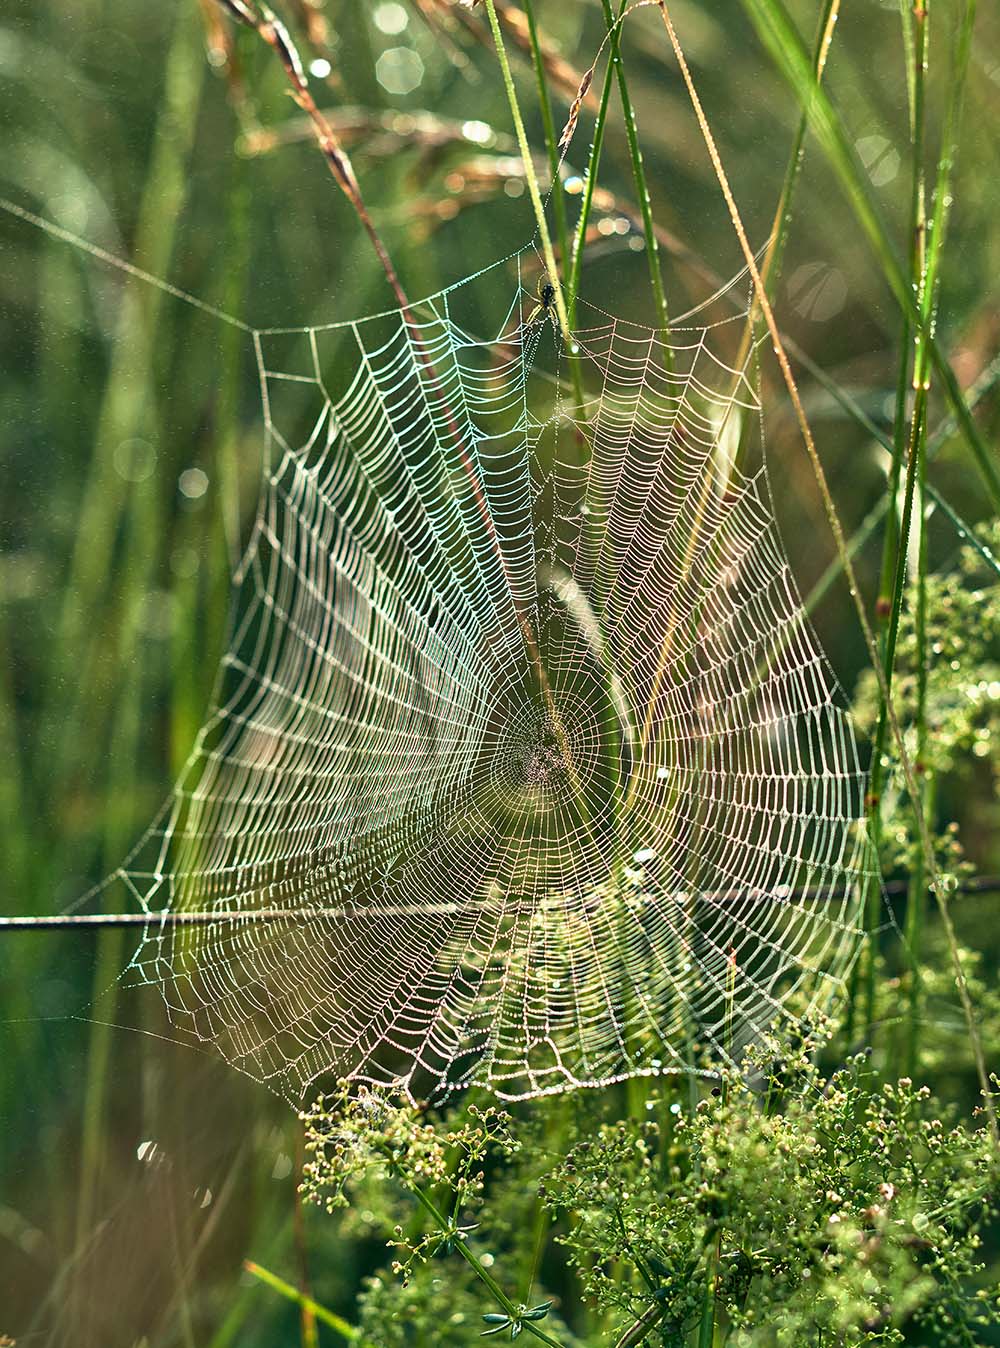  spider’s web 